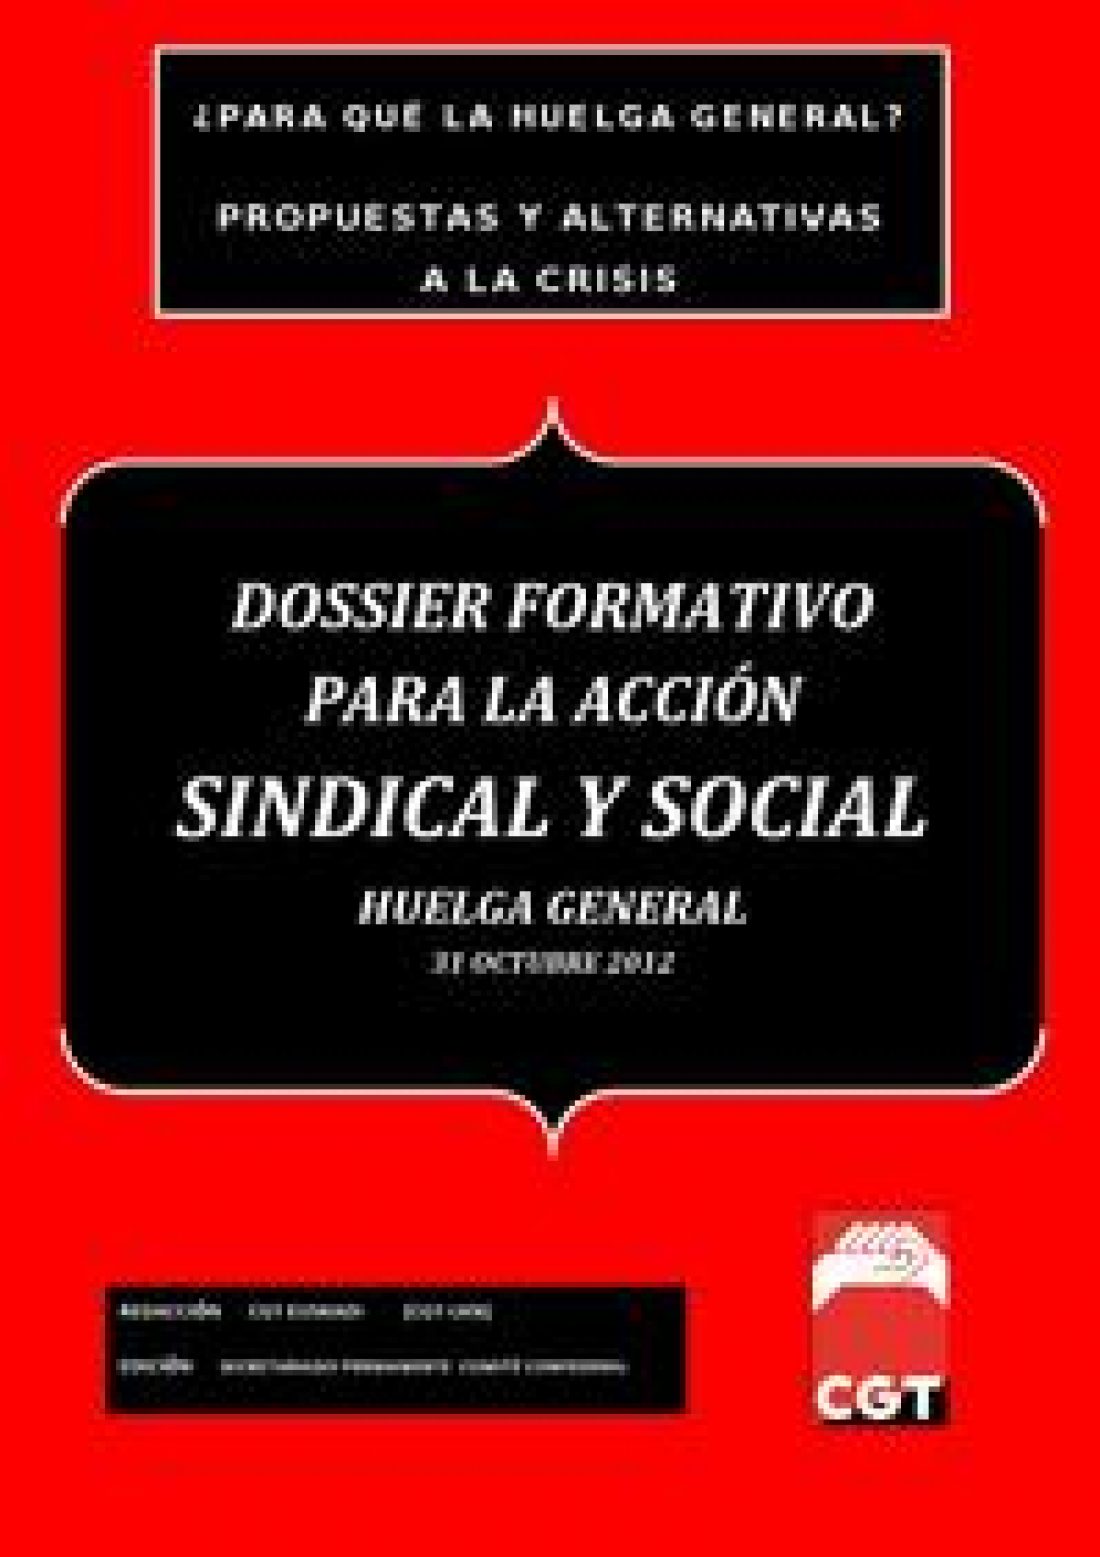 Dossier formativo para la Acción Sindical y Social de cara a la Huelga General del 31 de octubre